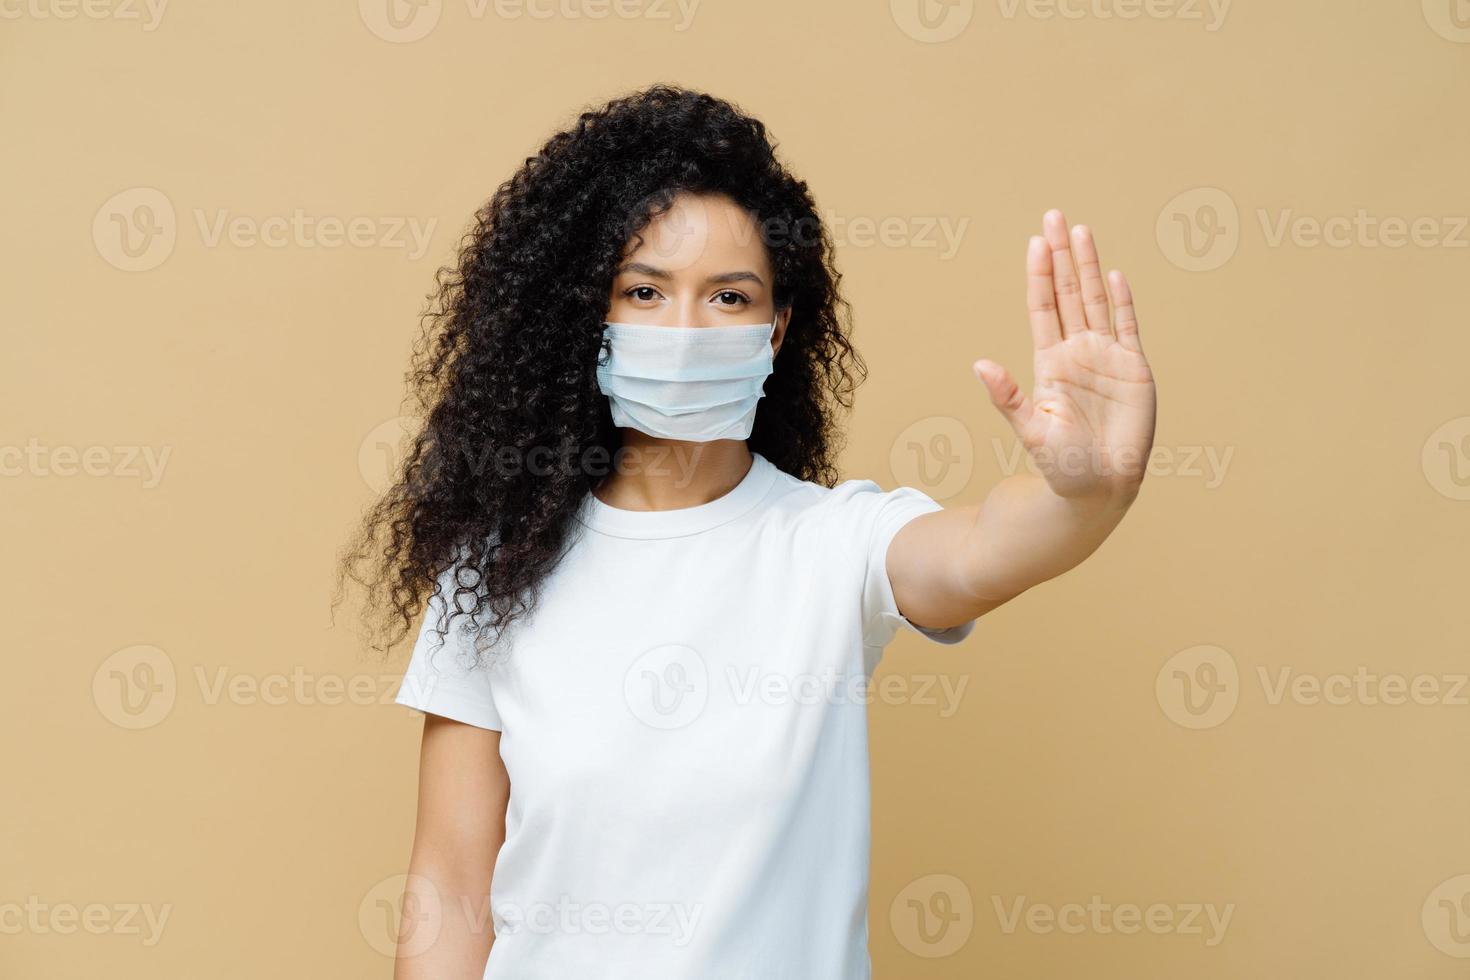 seriös mörkhyad kvinna gör en stoppgest, drar handflatan mot kameran, bär medicinsk influensamask, ber stanna hemma att inte sprida coronaviruset, förhindrar virus, klädd i vit t-shirt. foto